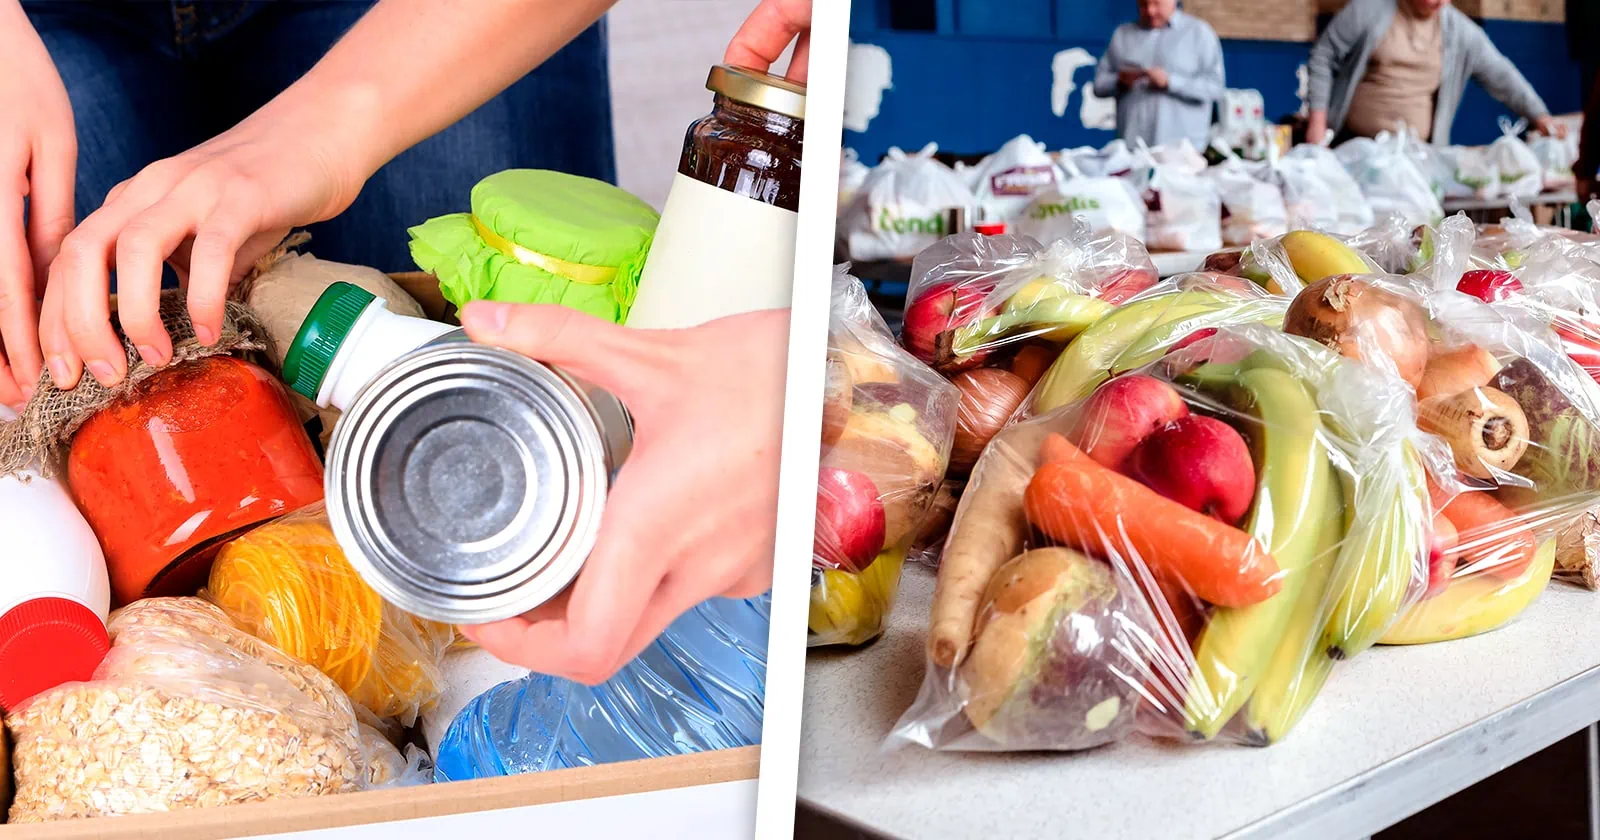 El Condado Miami-Dade y el Programa de Alimentos Buscan Socios Comunitarios Para Acción Benéfica Durante el Verano